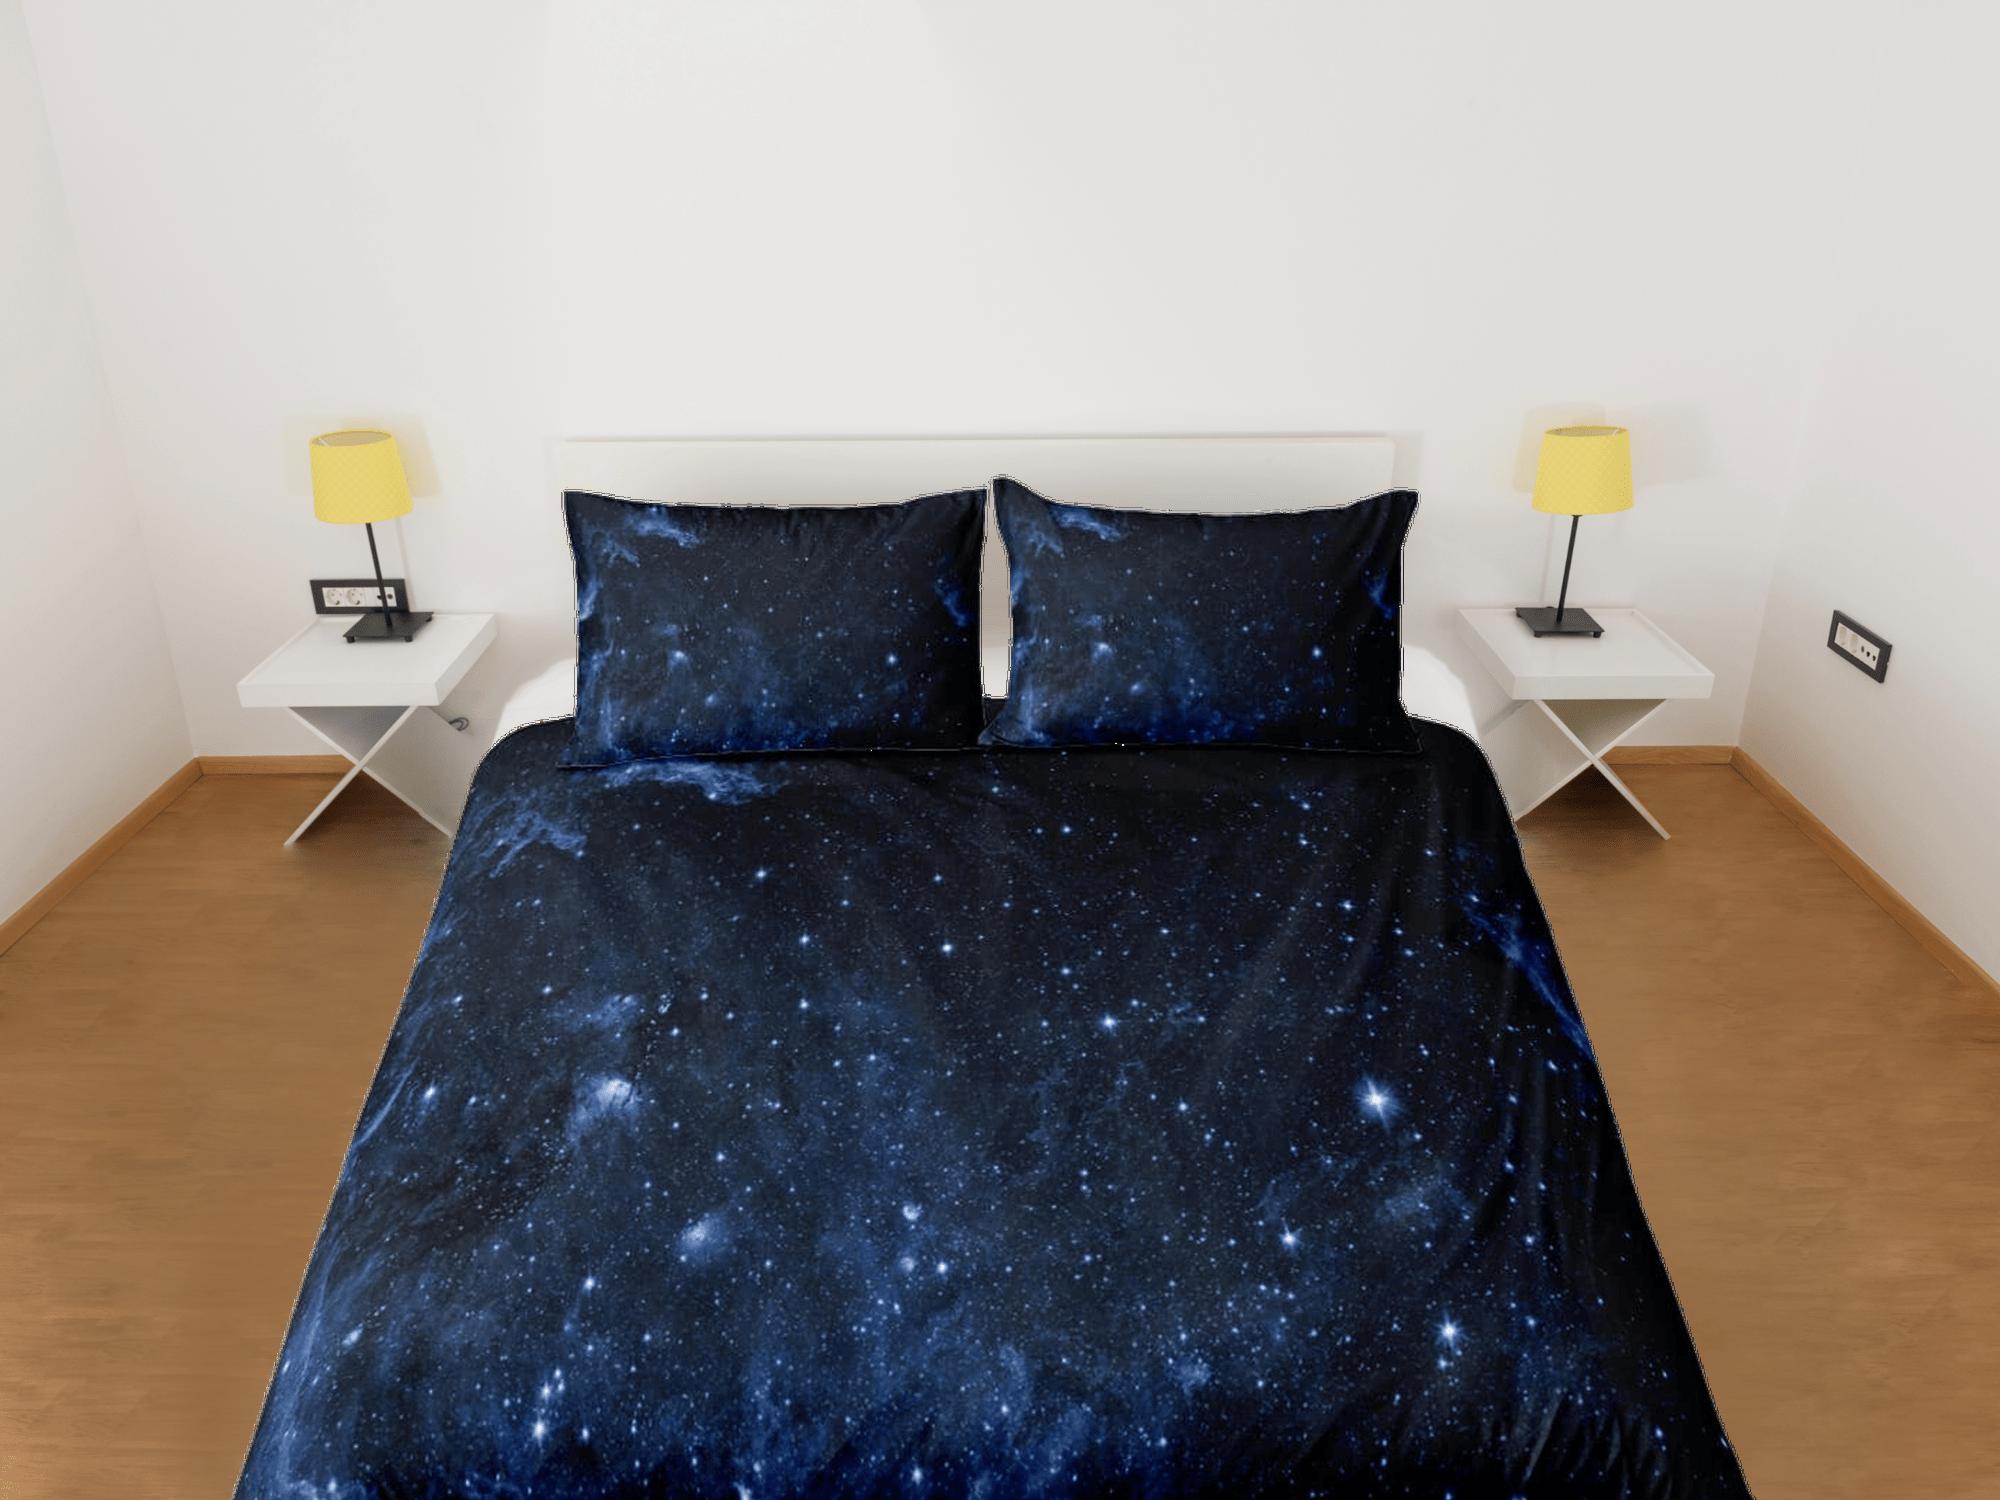 daintyduvet Galaxy dark blue bedding, 3D outer space bedding set full, cosmic duvet cover king, queen, dorm bedding, toddler bedding aesthetic duvet